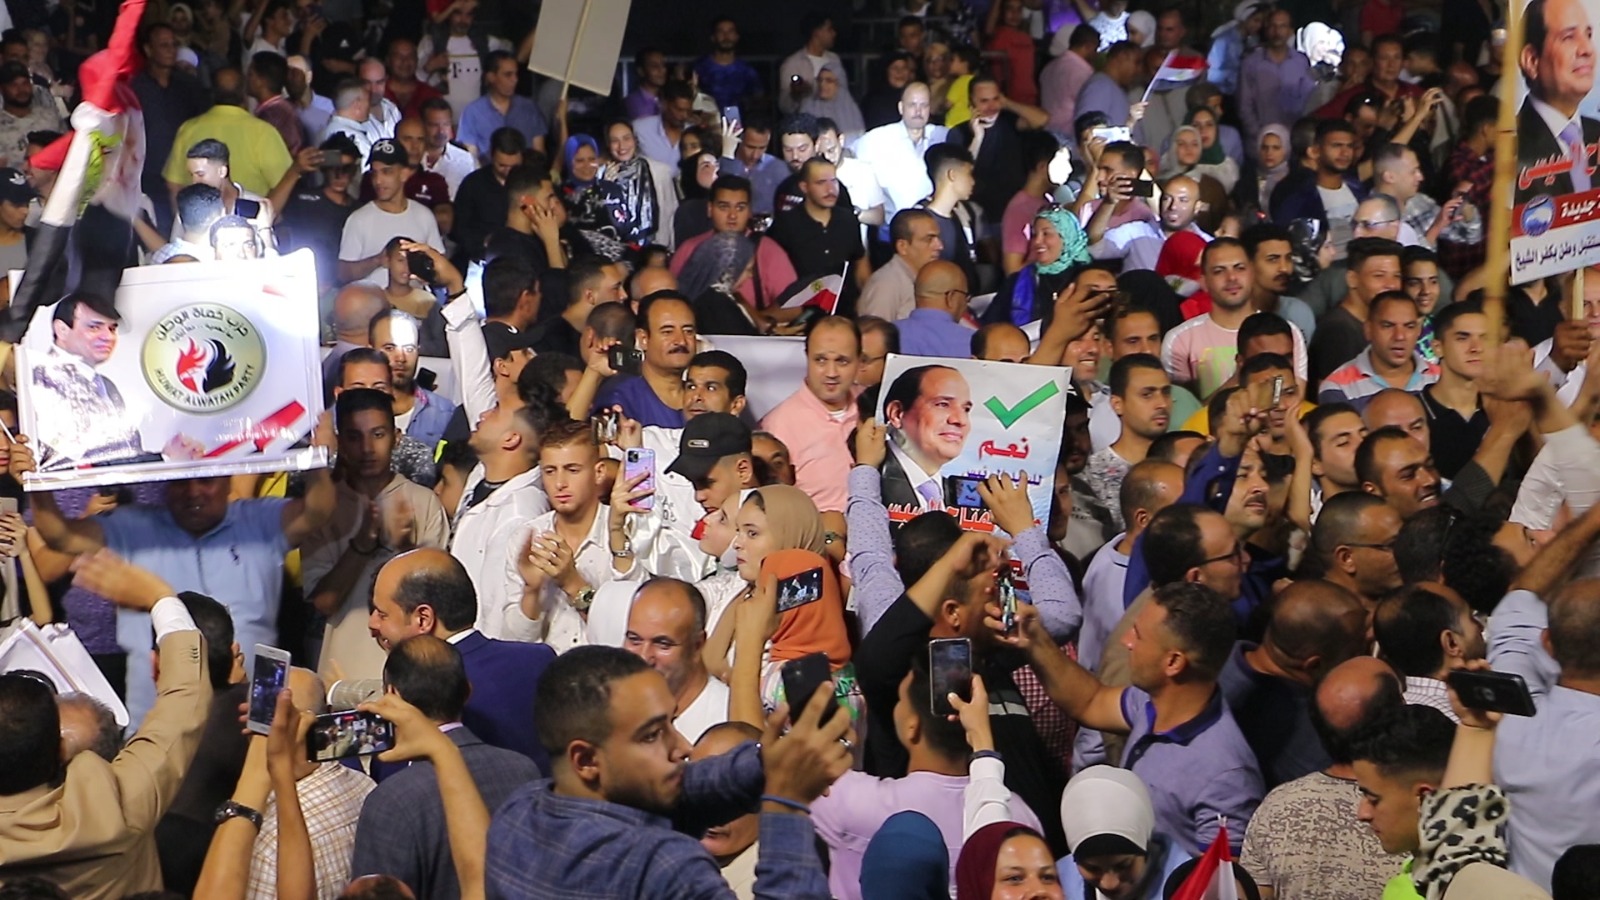 لافتات وصور للرئيس في احتفالية كفر الشيخ